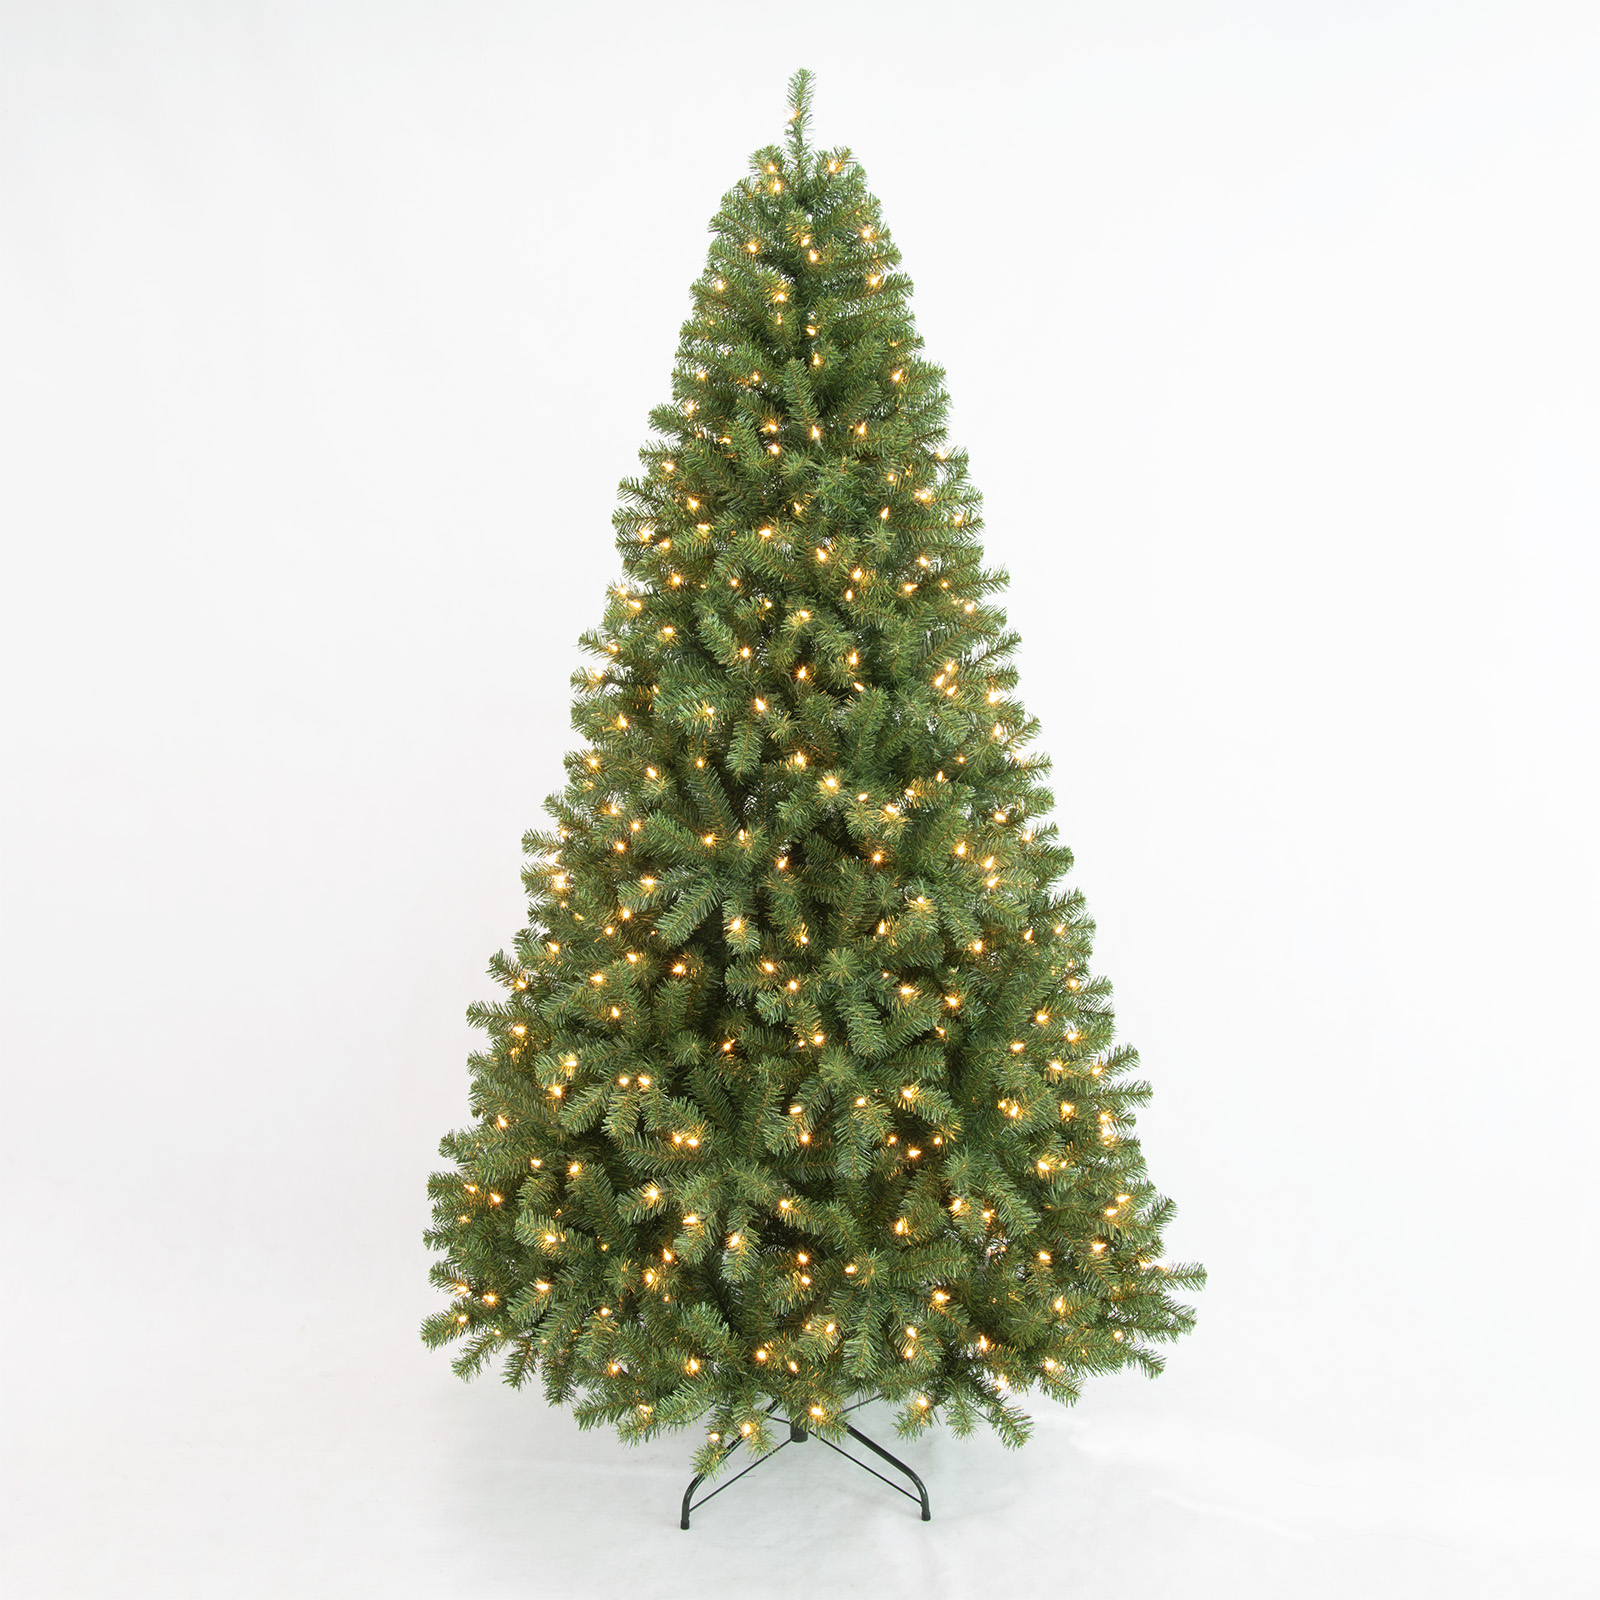 PINEFIELDS Árbol de Navidad preiluminado de 7.5 pies, árbol de Navidad artificial con luces, árbol de Navidad iluminado, árbol de Navidad clásico, 500 luces transparentes UL, PVC, bisagra, base de metal